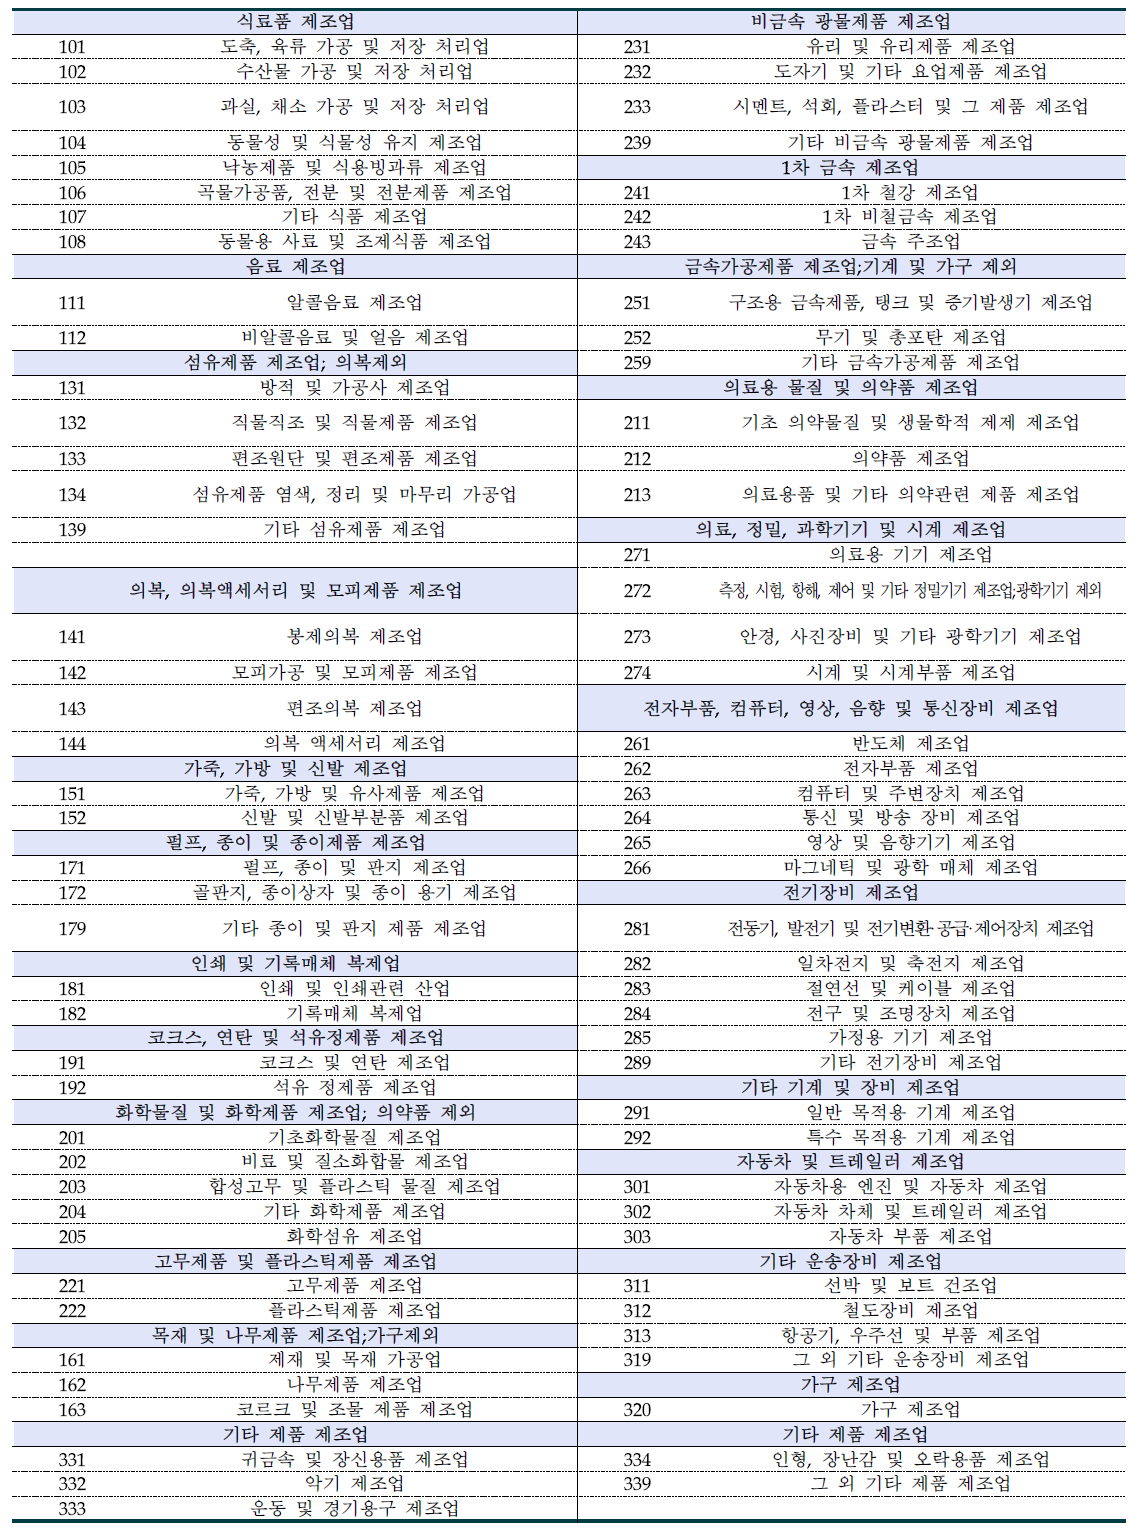 한국표준산업분류(KSIC) 제조업 분류